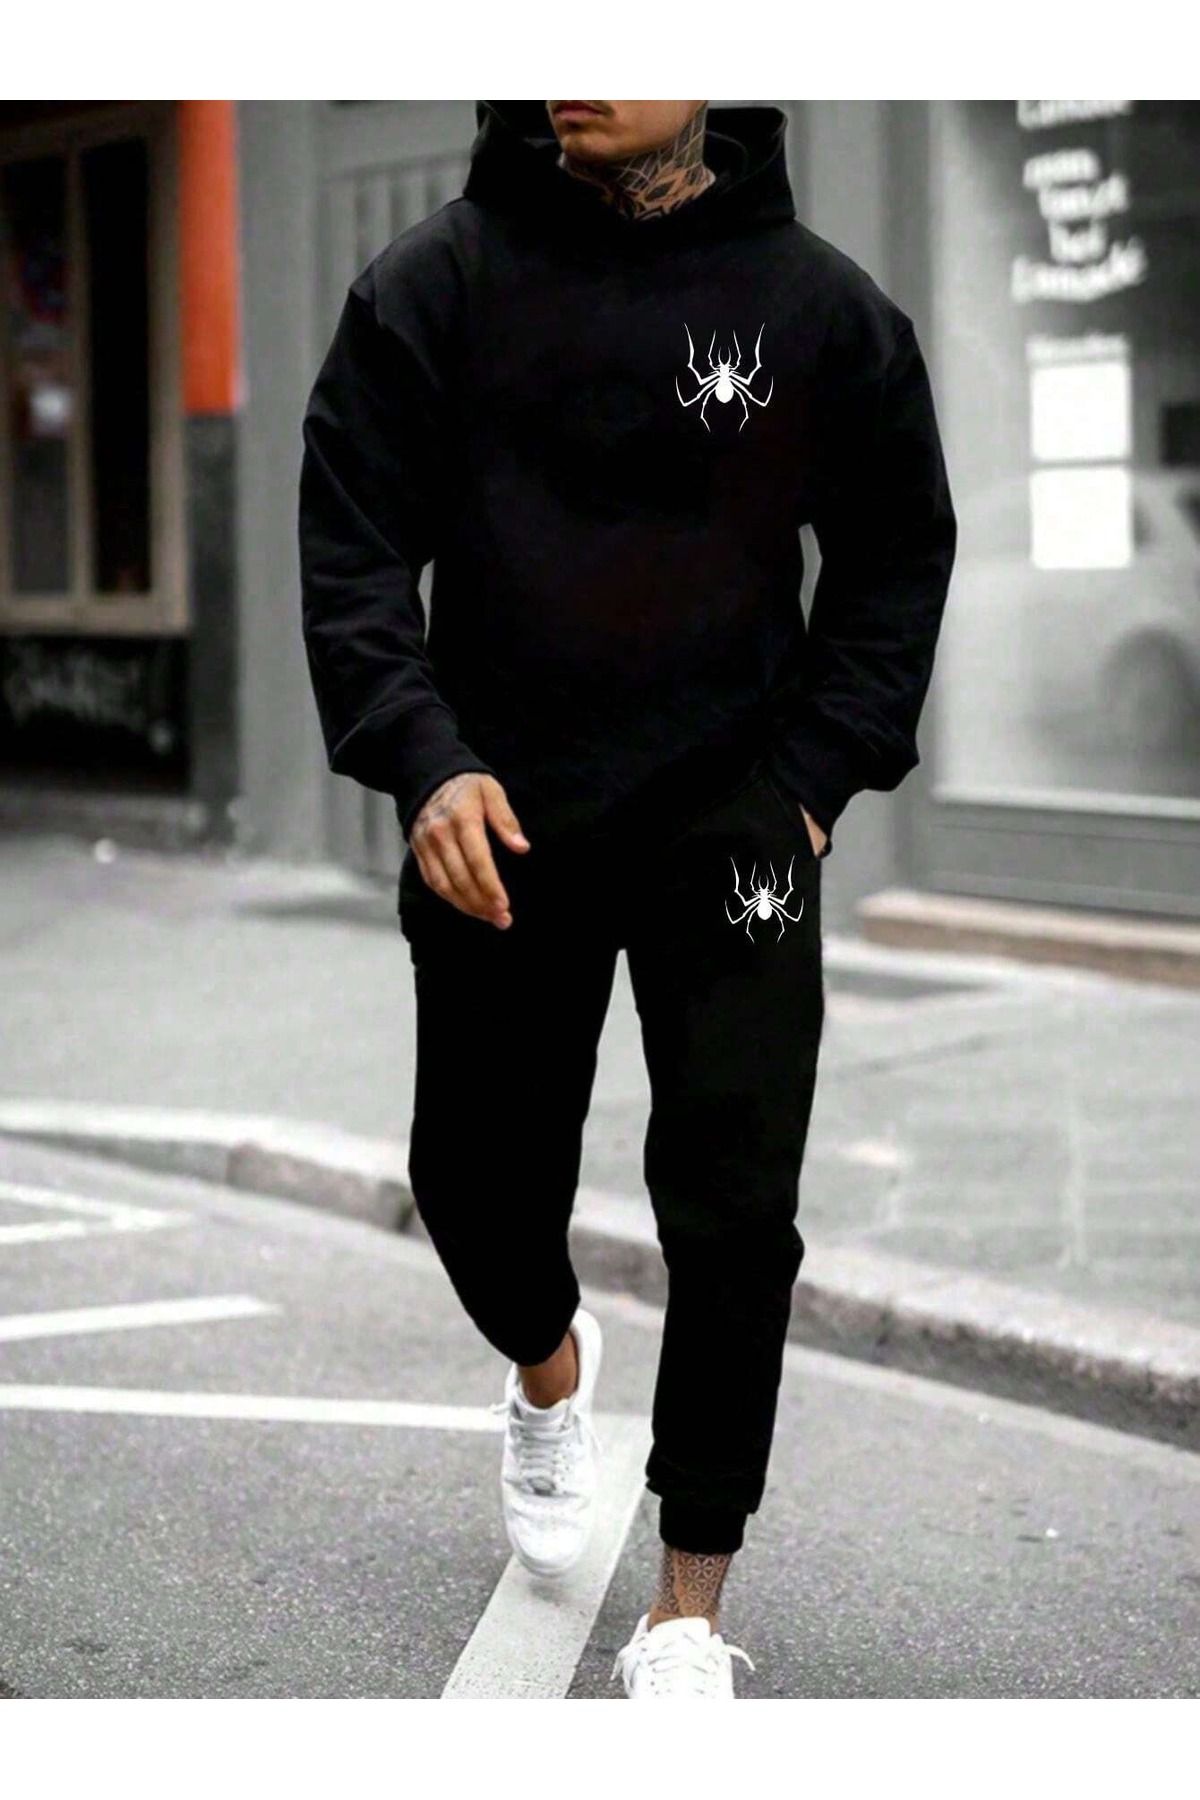 DAXİS Sportwear Company Baskılı Unisex Alt Üst Kombin Siyah Eşofman Takımı - Kapüşonlu Sweatshirt Eşofman Altı Jogger